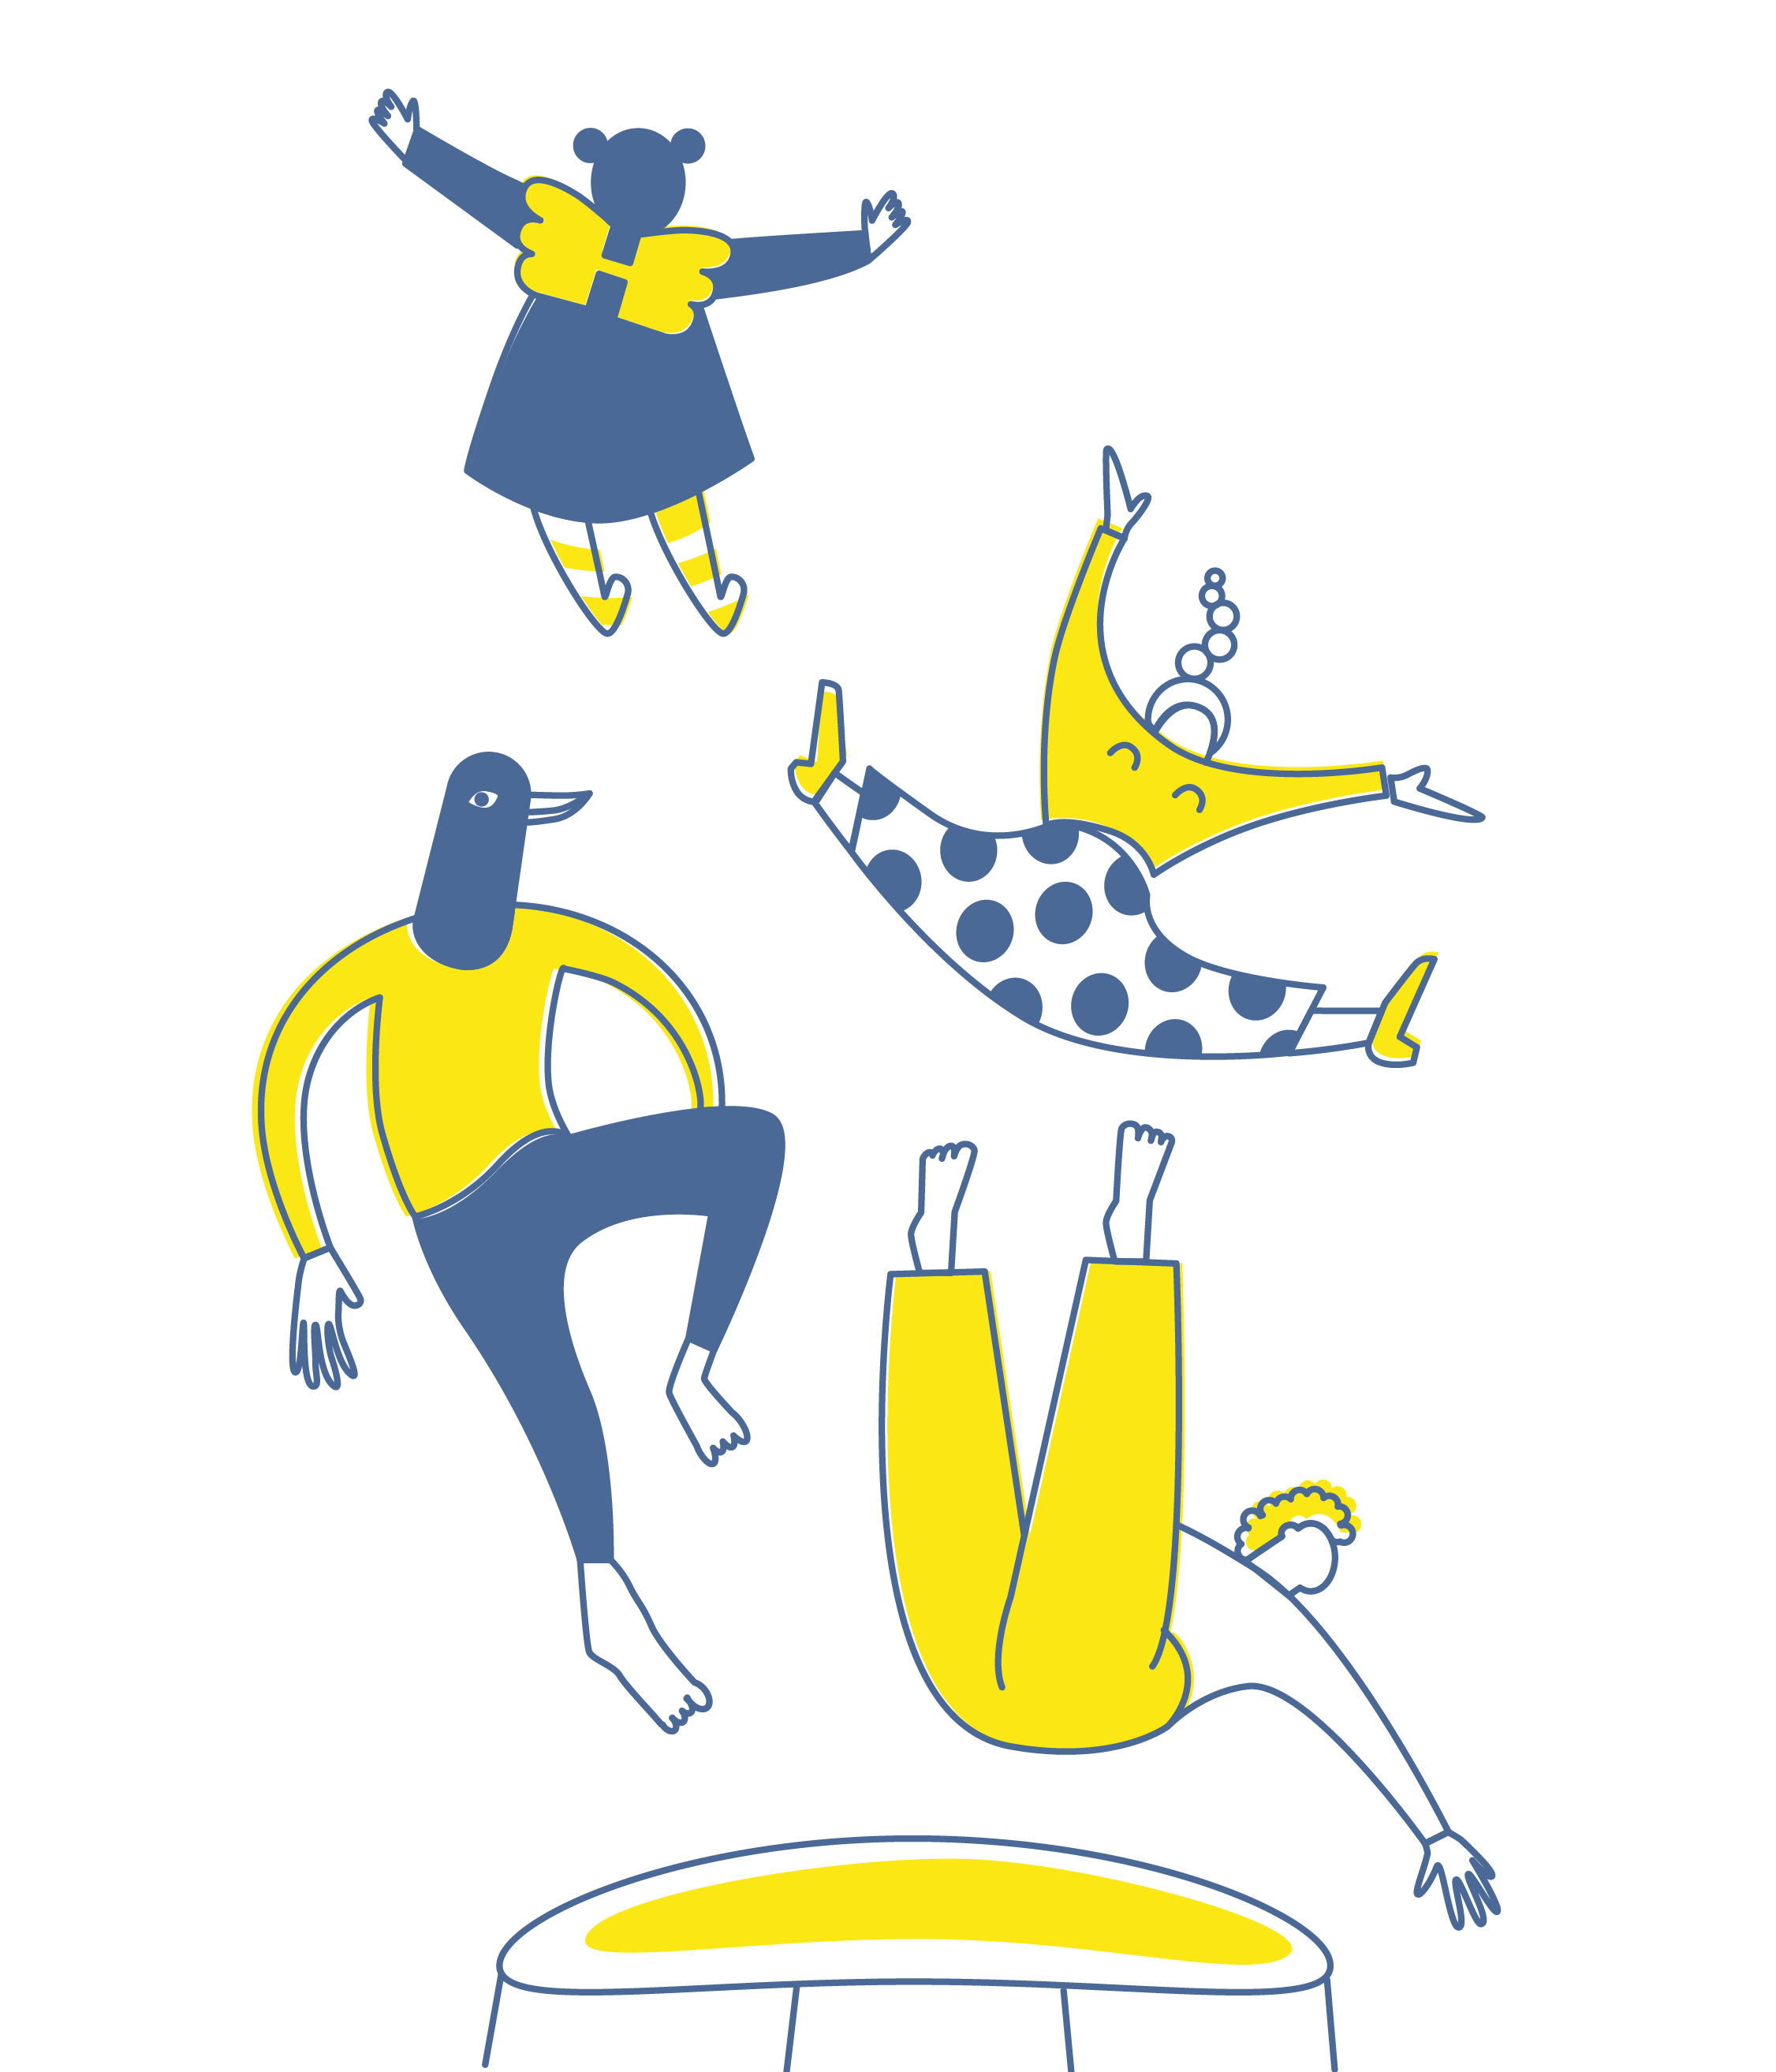 Wigwam Illustration - stilisierte, lebendig auf Trampolin in die Luft hüpfende, Menschen und Tiergestalten, in den Farben blau und gelb.